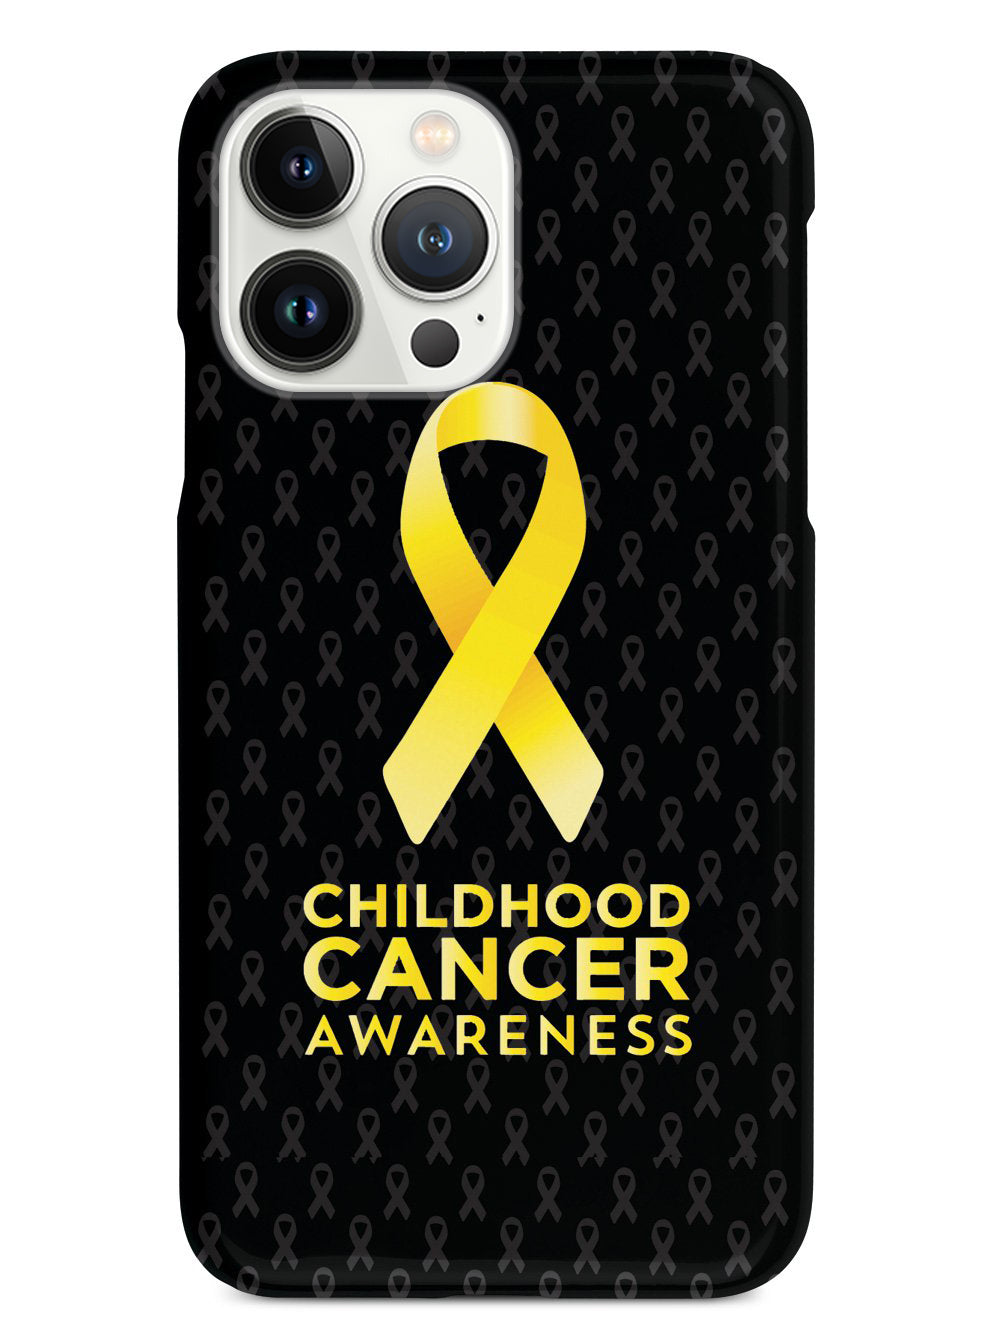 Childhood Cancer Awareness Case